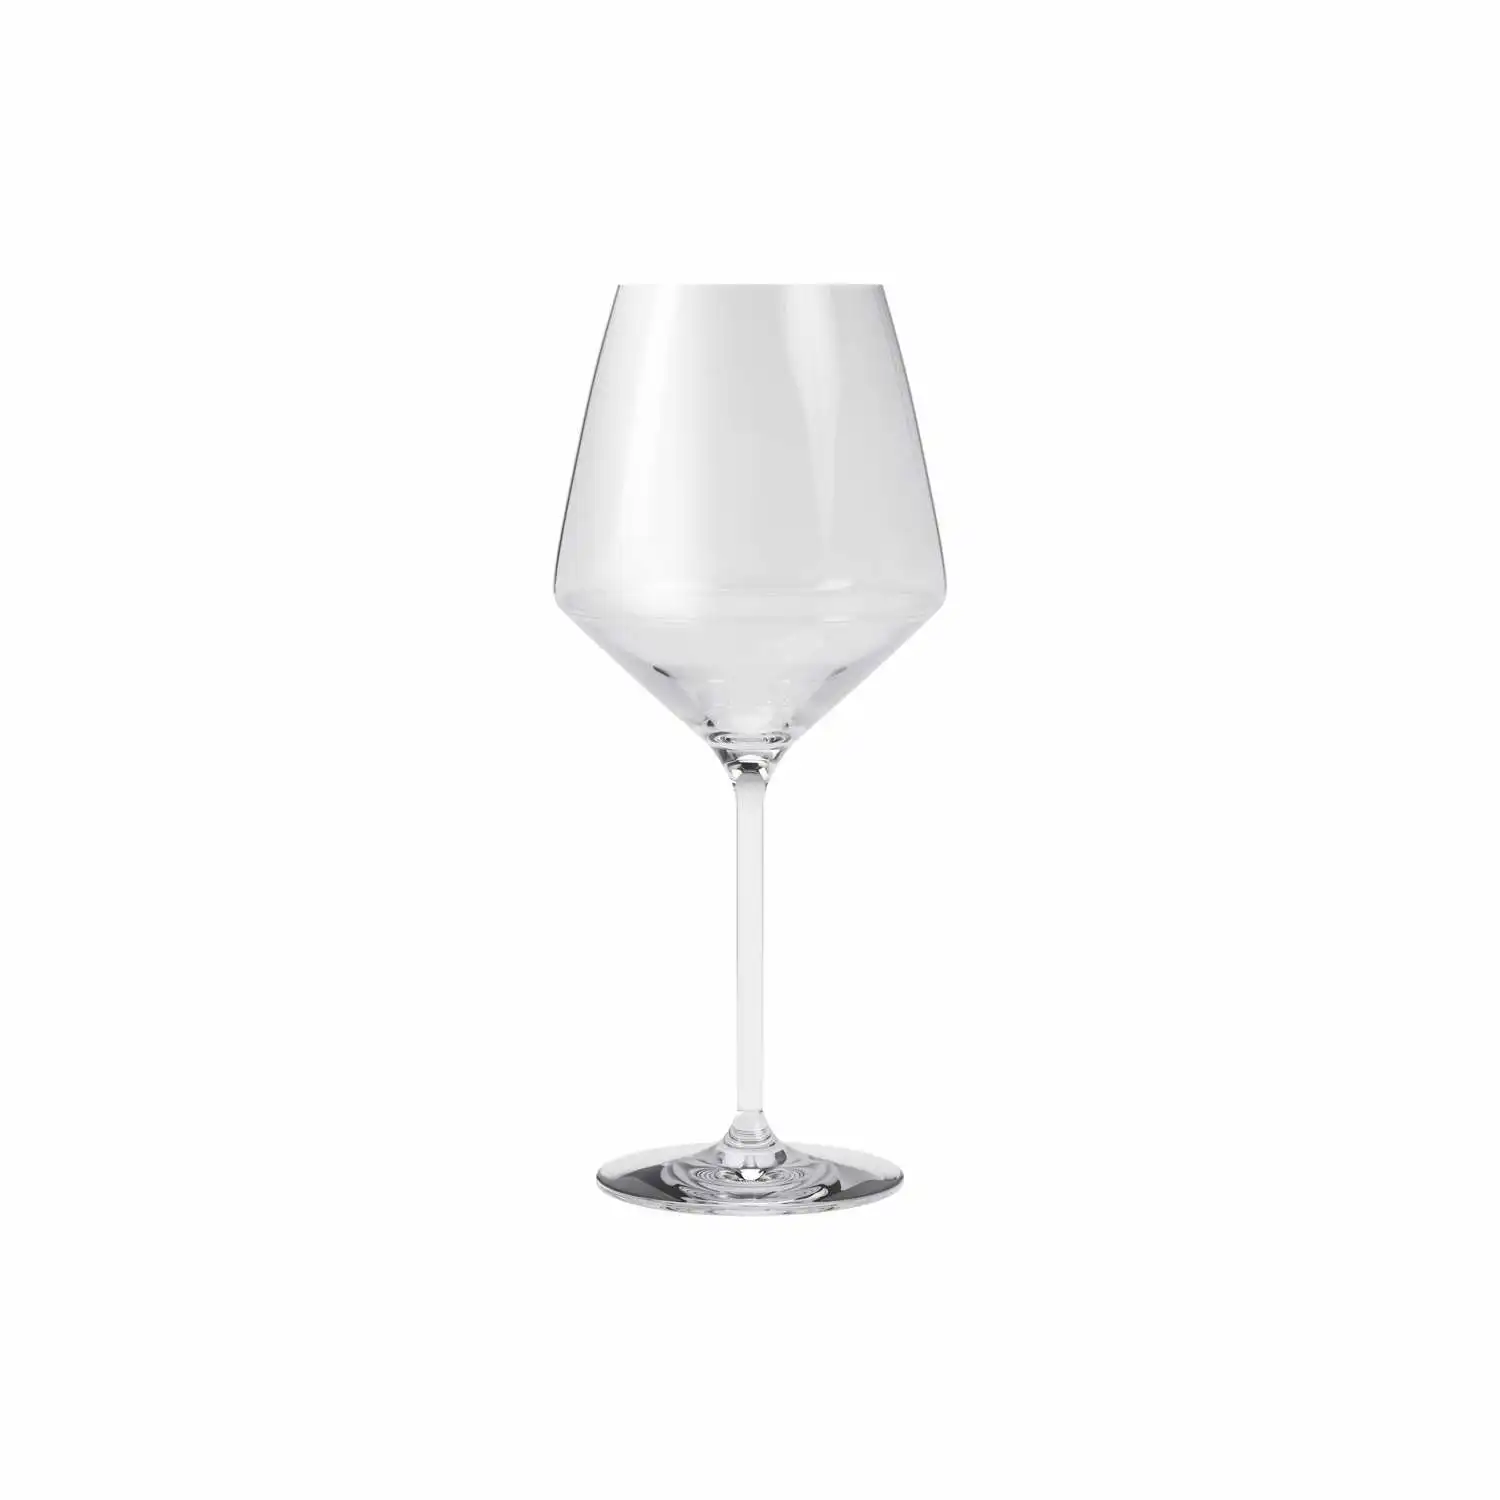 541202-bourgogne-wine-glass-legio-nova-1pcs-noregi.webp